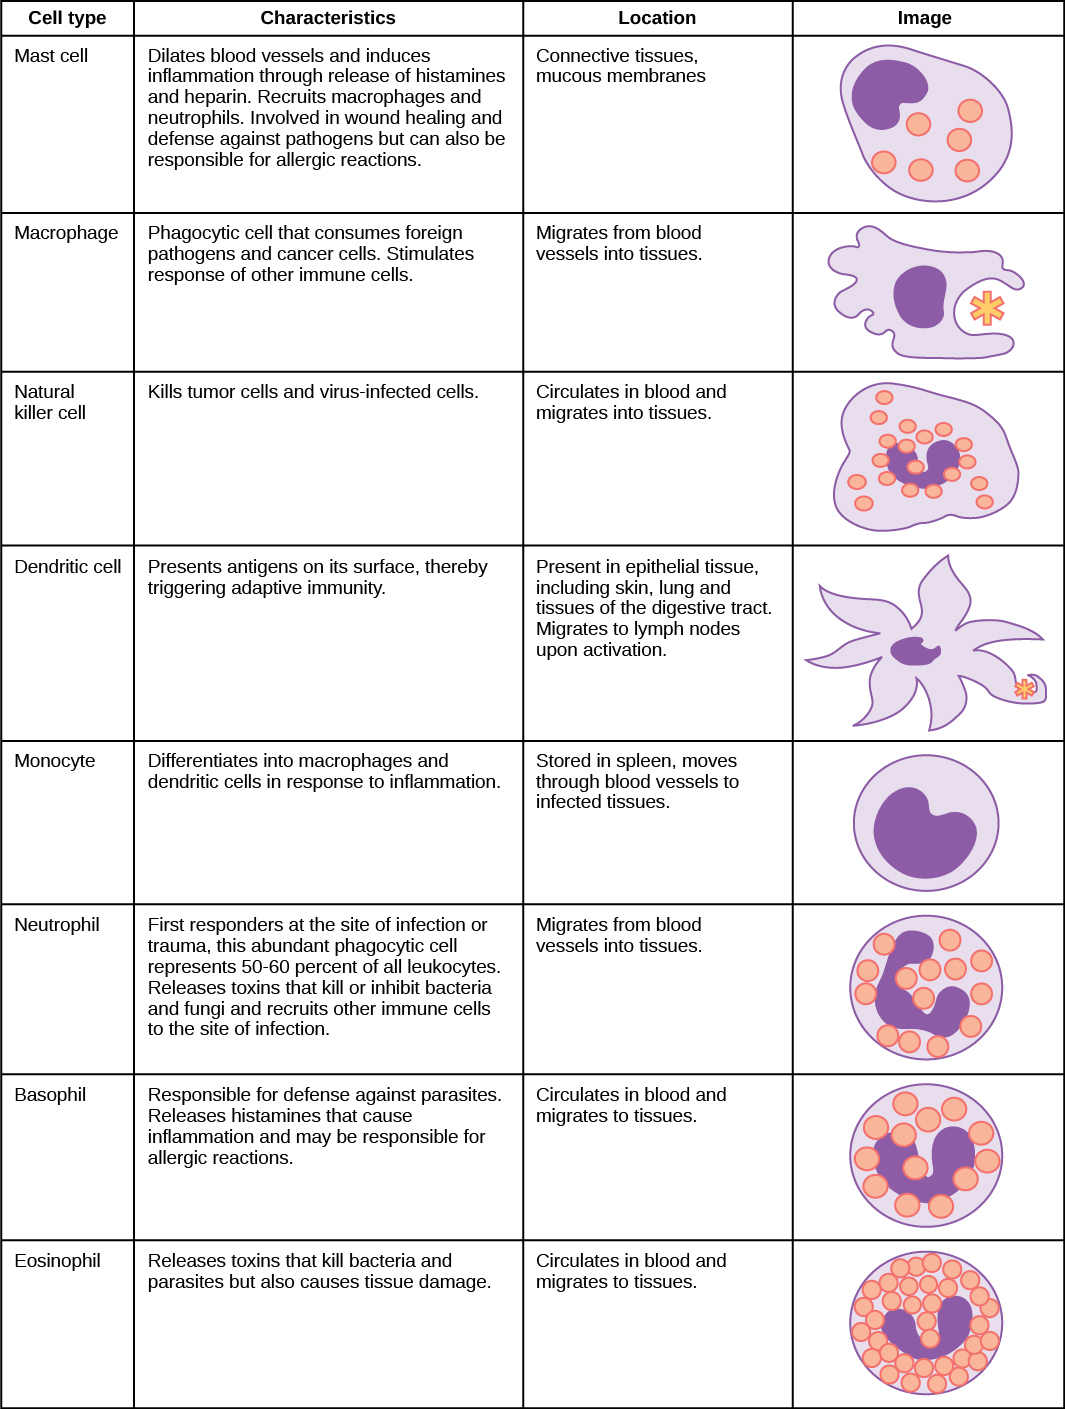 Le tableau montre les différents types de globules blancs et décrit leur fonction. Les mastocytes, les cellules tueuses naturelles, les neutrophiles, les basophiles et les éosinophiles sont tous remplis de granules et possèdent un noyau en forme de fer à cheval. Les macrophages sont de forme irrégulière, avec un noyau rond. Les dendrites ont des projections en forme d'étoile et un petit noyau en forme de fer à cheval. Les mastocytes dilatent les vaisseaux sanguins et provoquent une inflammation par la libération d'histamines et d'héparine. Ils recrutent également des macrophages et des neutrophiles, participent à la cicatrisation des plaies et à la défense contre les agents pathogènes, mais peuvent également être responsables de réactions allergiques. On les trouve dans le tissu conjonctif et les muqueuses. Les macrophages sont des cellules phagocytaires qui consomment des agents pathogènes étrangers et des cellules cancéreuses. Ils stimulent la réponse d'autres cellules immunitaires et migrent des vaisseaux sanguins vers les tissus. Les cellules tueuses naturelles tuent les cellules tumorales et les cellules infectées par des virus. Ils circulent dans le sang et migrent dans les tissus. Les cellules dendritiques présentent des antigènes à leur surface, déclenchant ainsi une immunité adaptative. Ils sont présents dans les tissus épithéliaux, y compris la peau, les poumons et les tissus du tube digestif. Migrez vers les ganglions lymphatiques lors de l'activation. Les monocytes se différencient en macrophages et en cellules dendritiques en réponse à l'inflammation. Ils sont stockés dans la rate, traversent les vaisseaux sanguins pour atteindre les tissus infectés. Les neutrophiles sont les premiers intervenants sur le site de l'infection ou du traumatisme, ces cellules phagocytaires abondantes représentant 50 à 60 % de tous les leucocytes. Libère des toxines qui tuent ou inhibent les bactéries et les champignons et recrutent d'autres cellules immunitaires sur le site de l'infection. Ils migrent des vaisseaux sanguins vers les tissus. Les basophiles sont responsables de la défense contre les parasites. Ils libèrent des histamines qui provoquent une inflammation et peuvent être responsables de réactions allergiques. Ils circulent dans le sang et migrent vers les tissus. Les éosinophiles libèrent des toxines qui tuent les bactéries et les parasites, mais endommagent également les tissus. Ils circulent dans le sang et migrent vers les tissus.